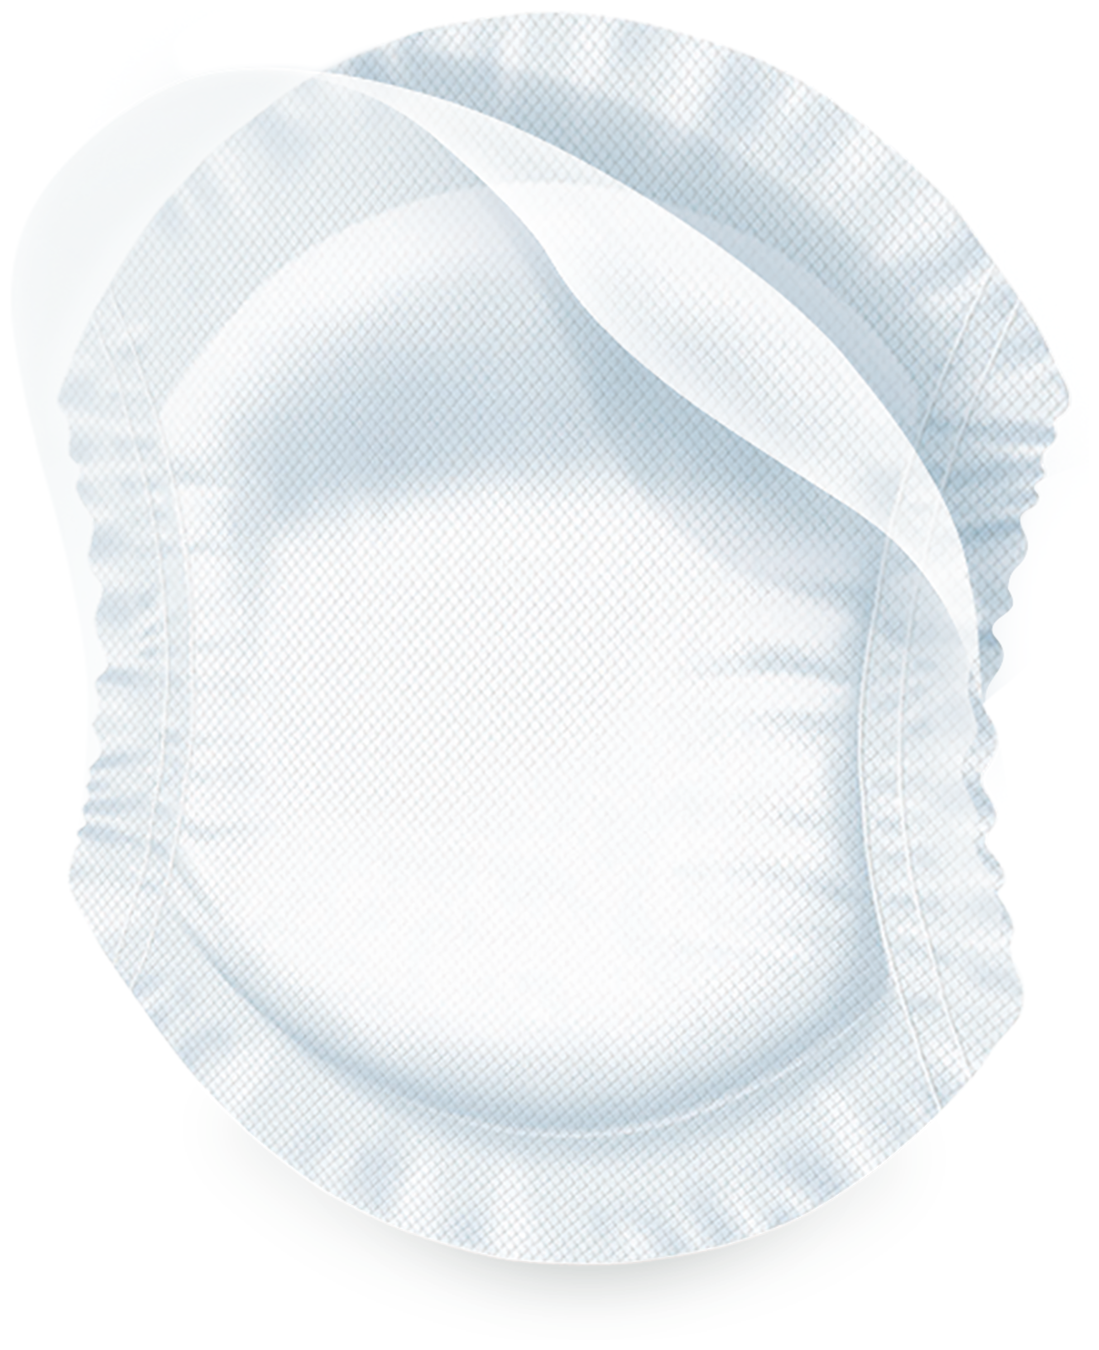 Chicco Антибактериальные прокладки для груди Natural Feeling, 60 шт.